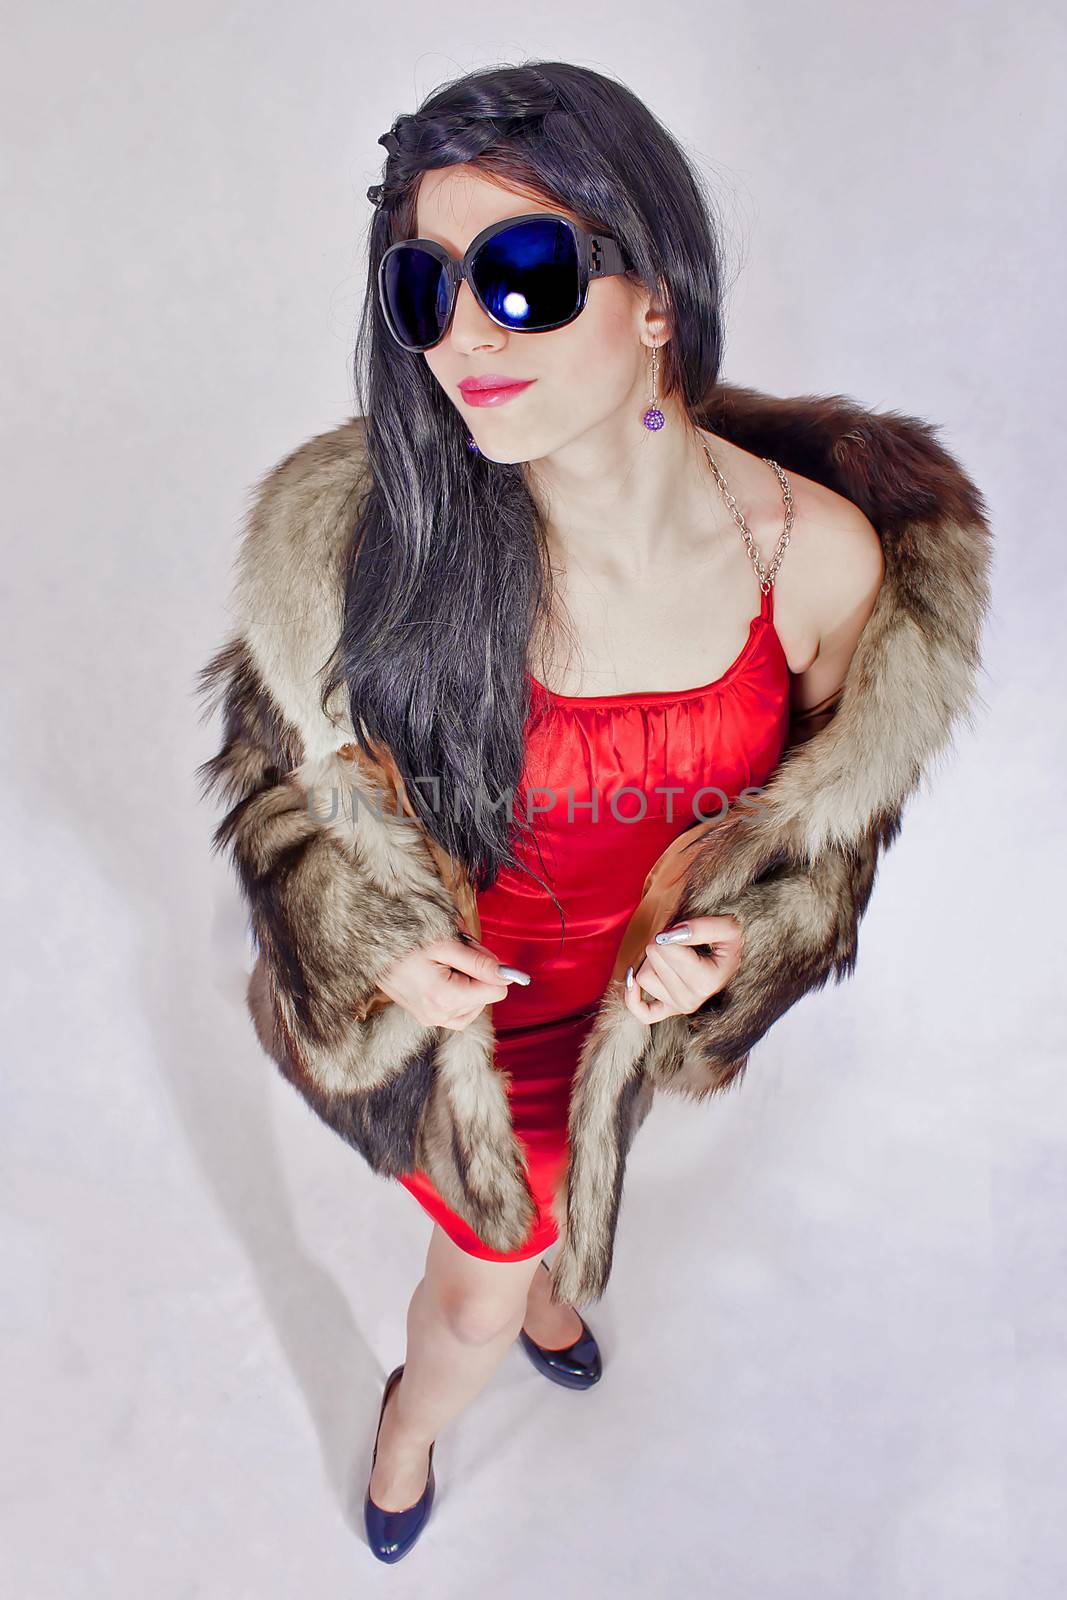 portrait of attractive woman in fur coat